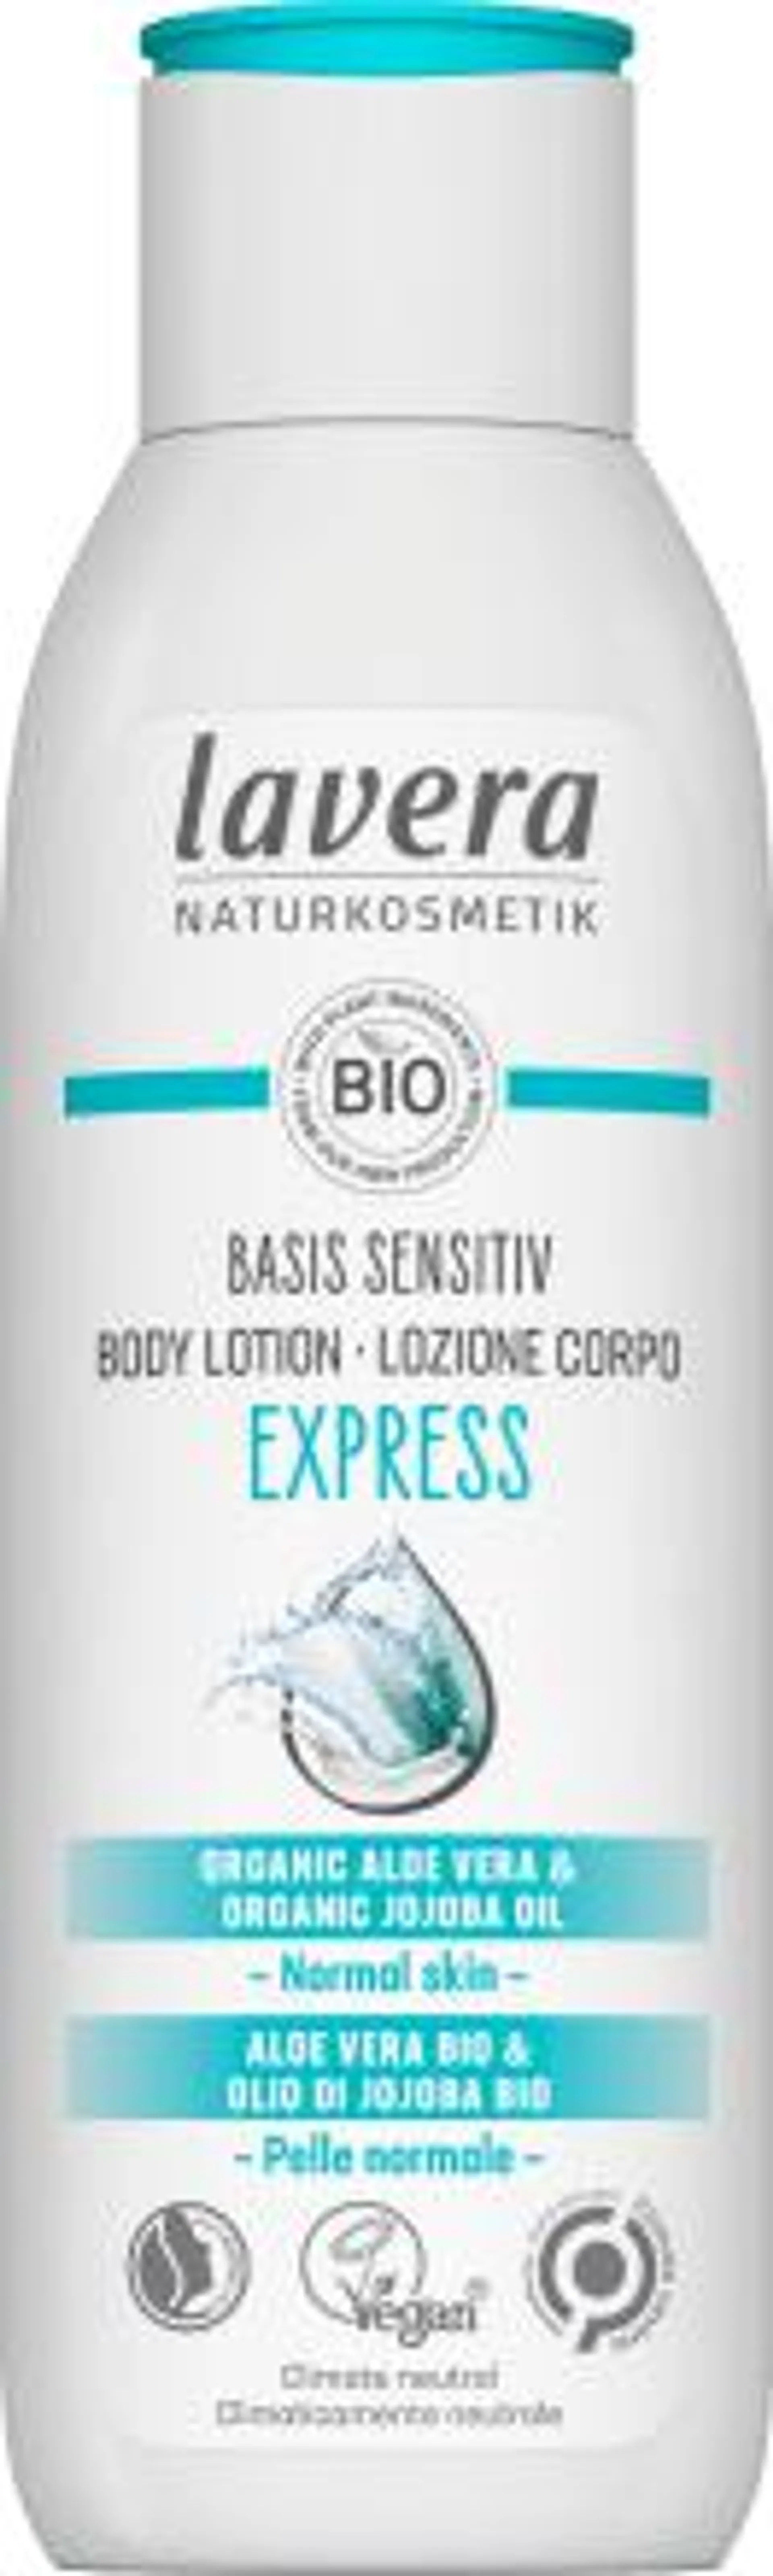 Lozione corpo Express Basis Sensitiv, 250 ml